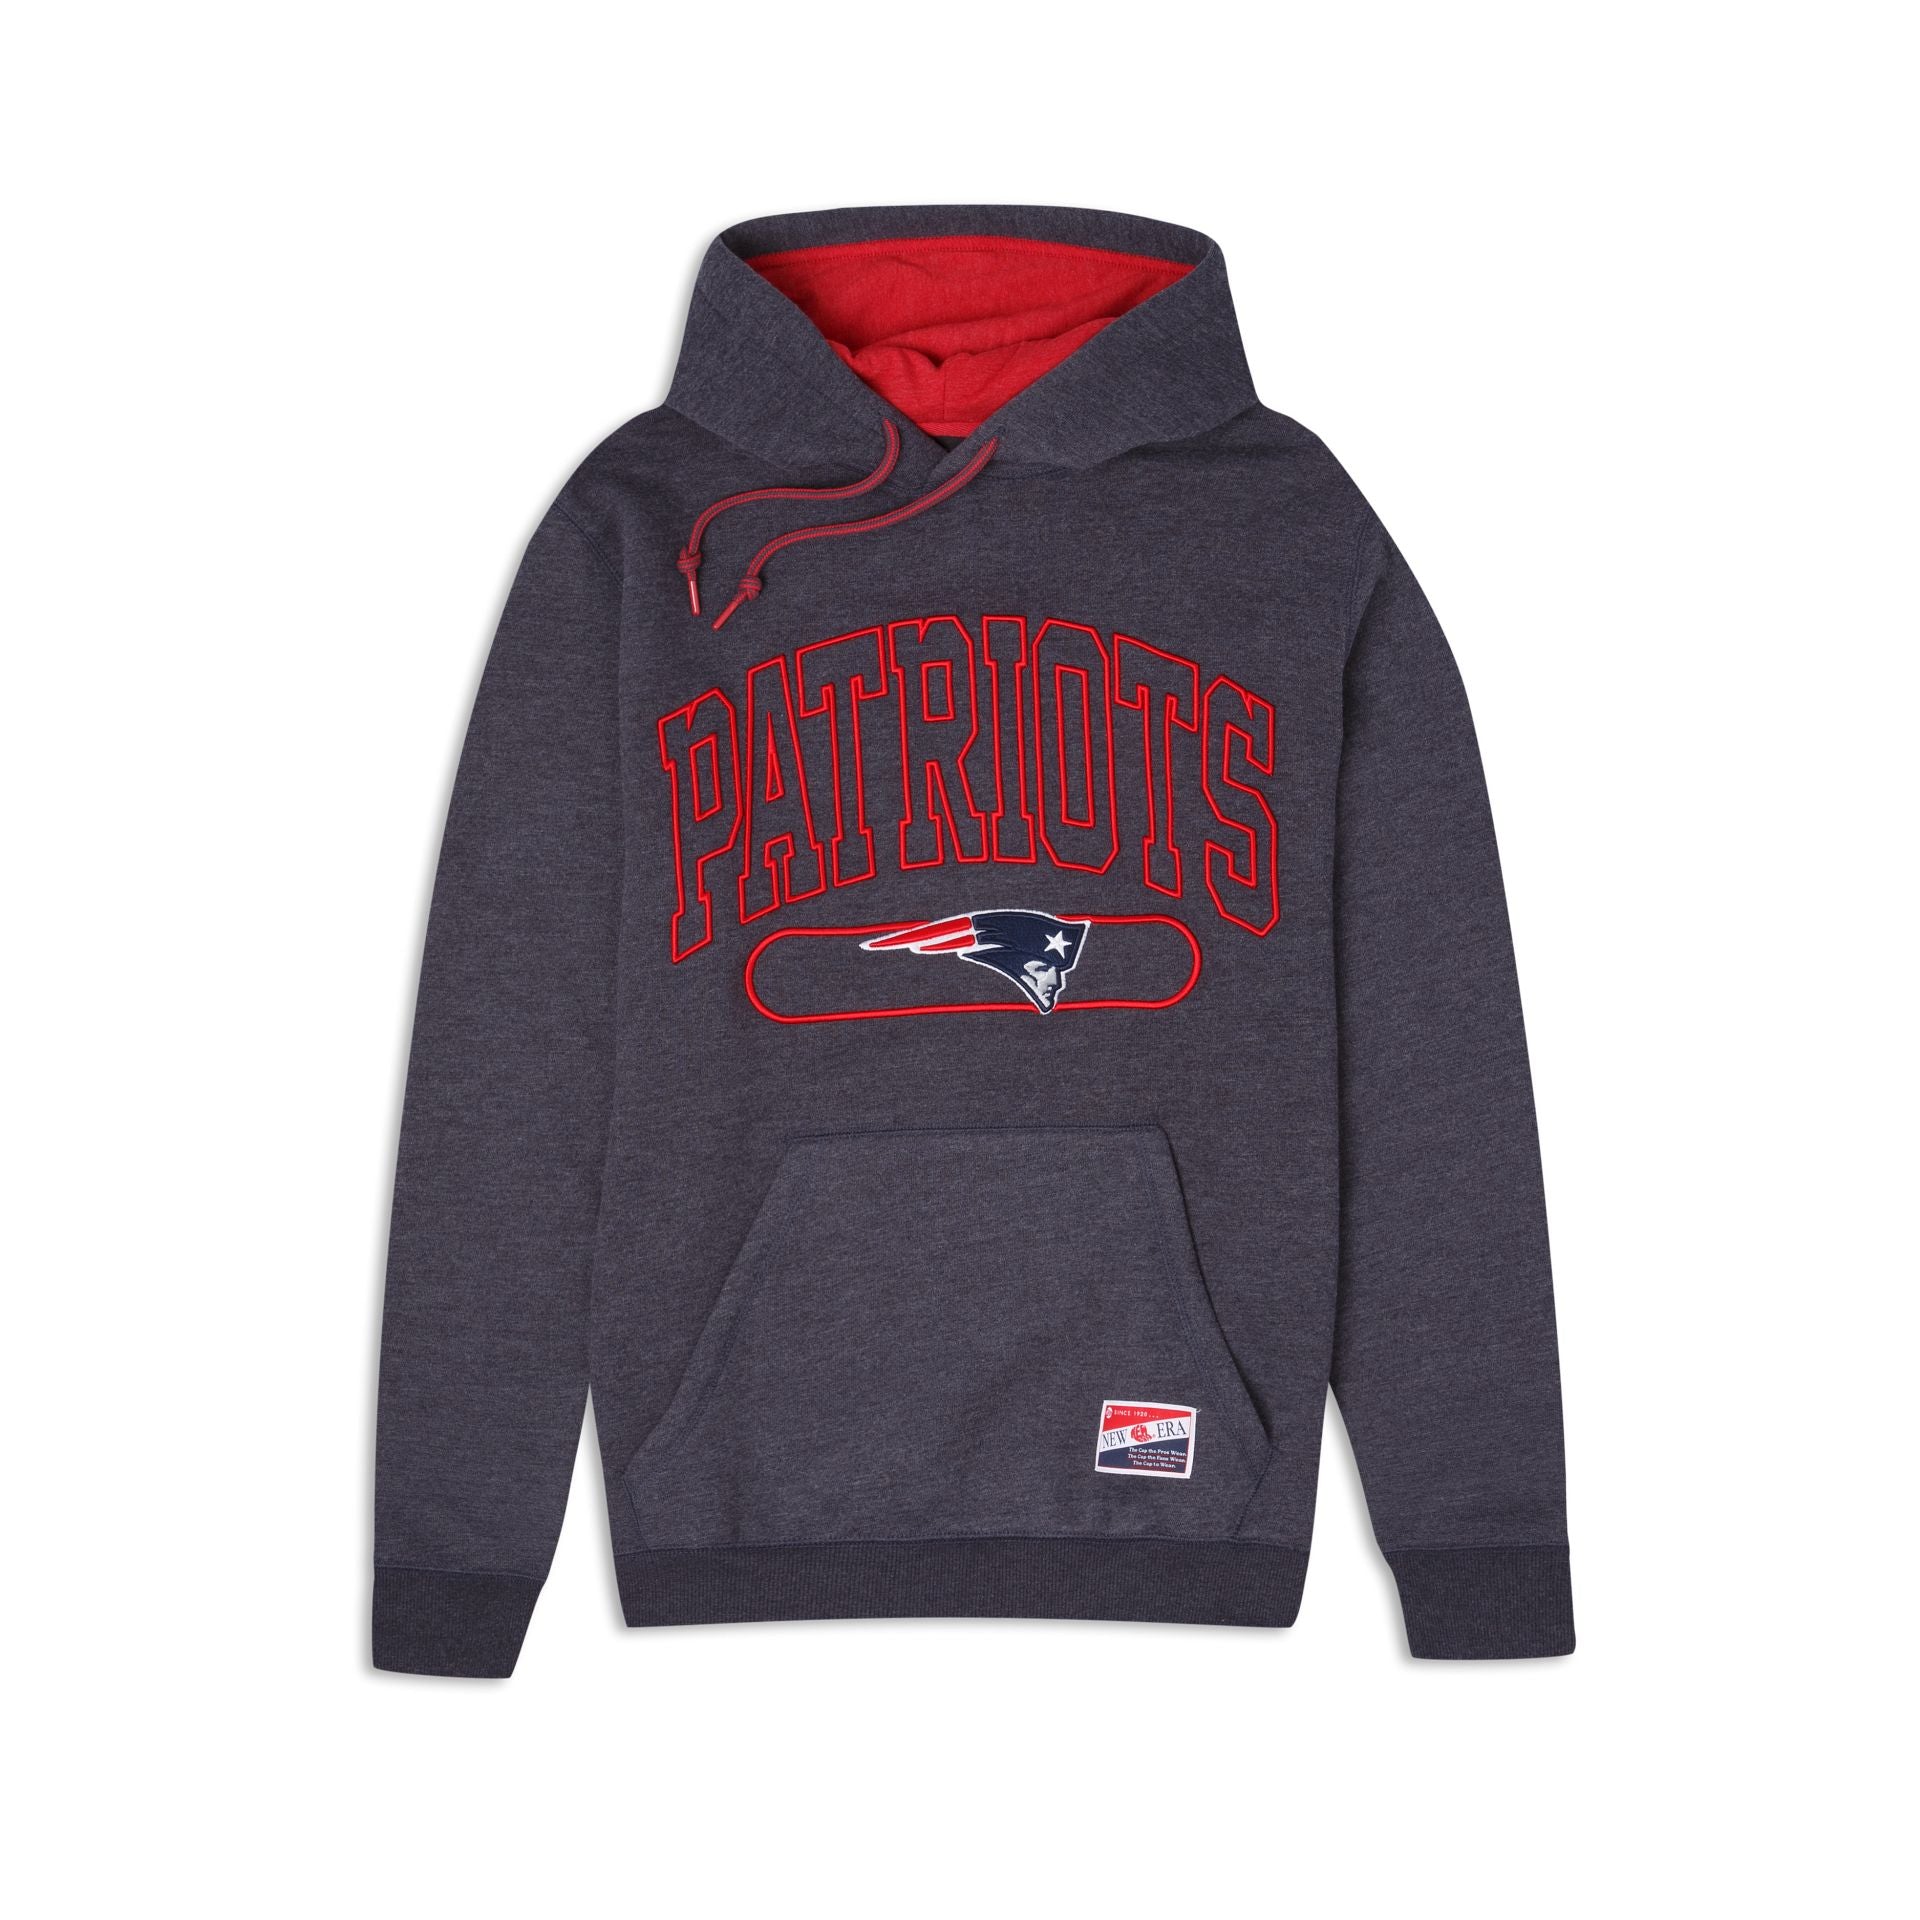 patriots throwback logo hoodie